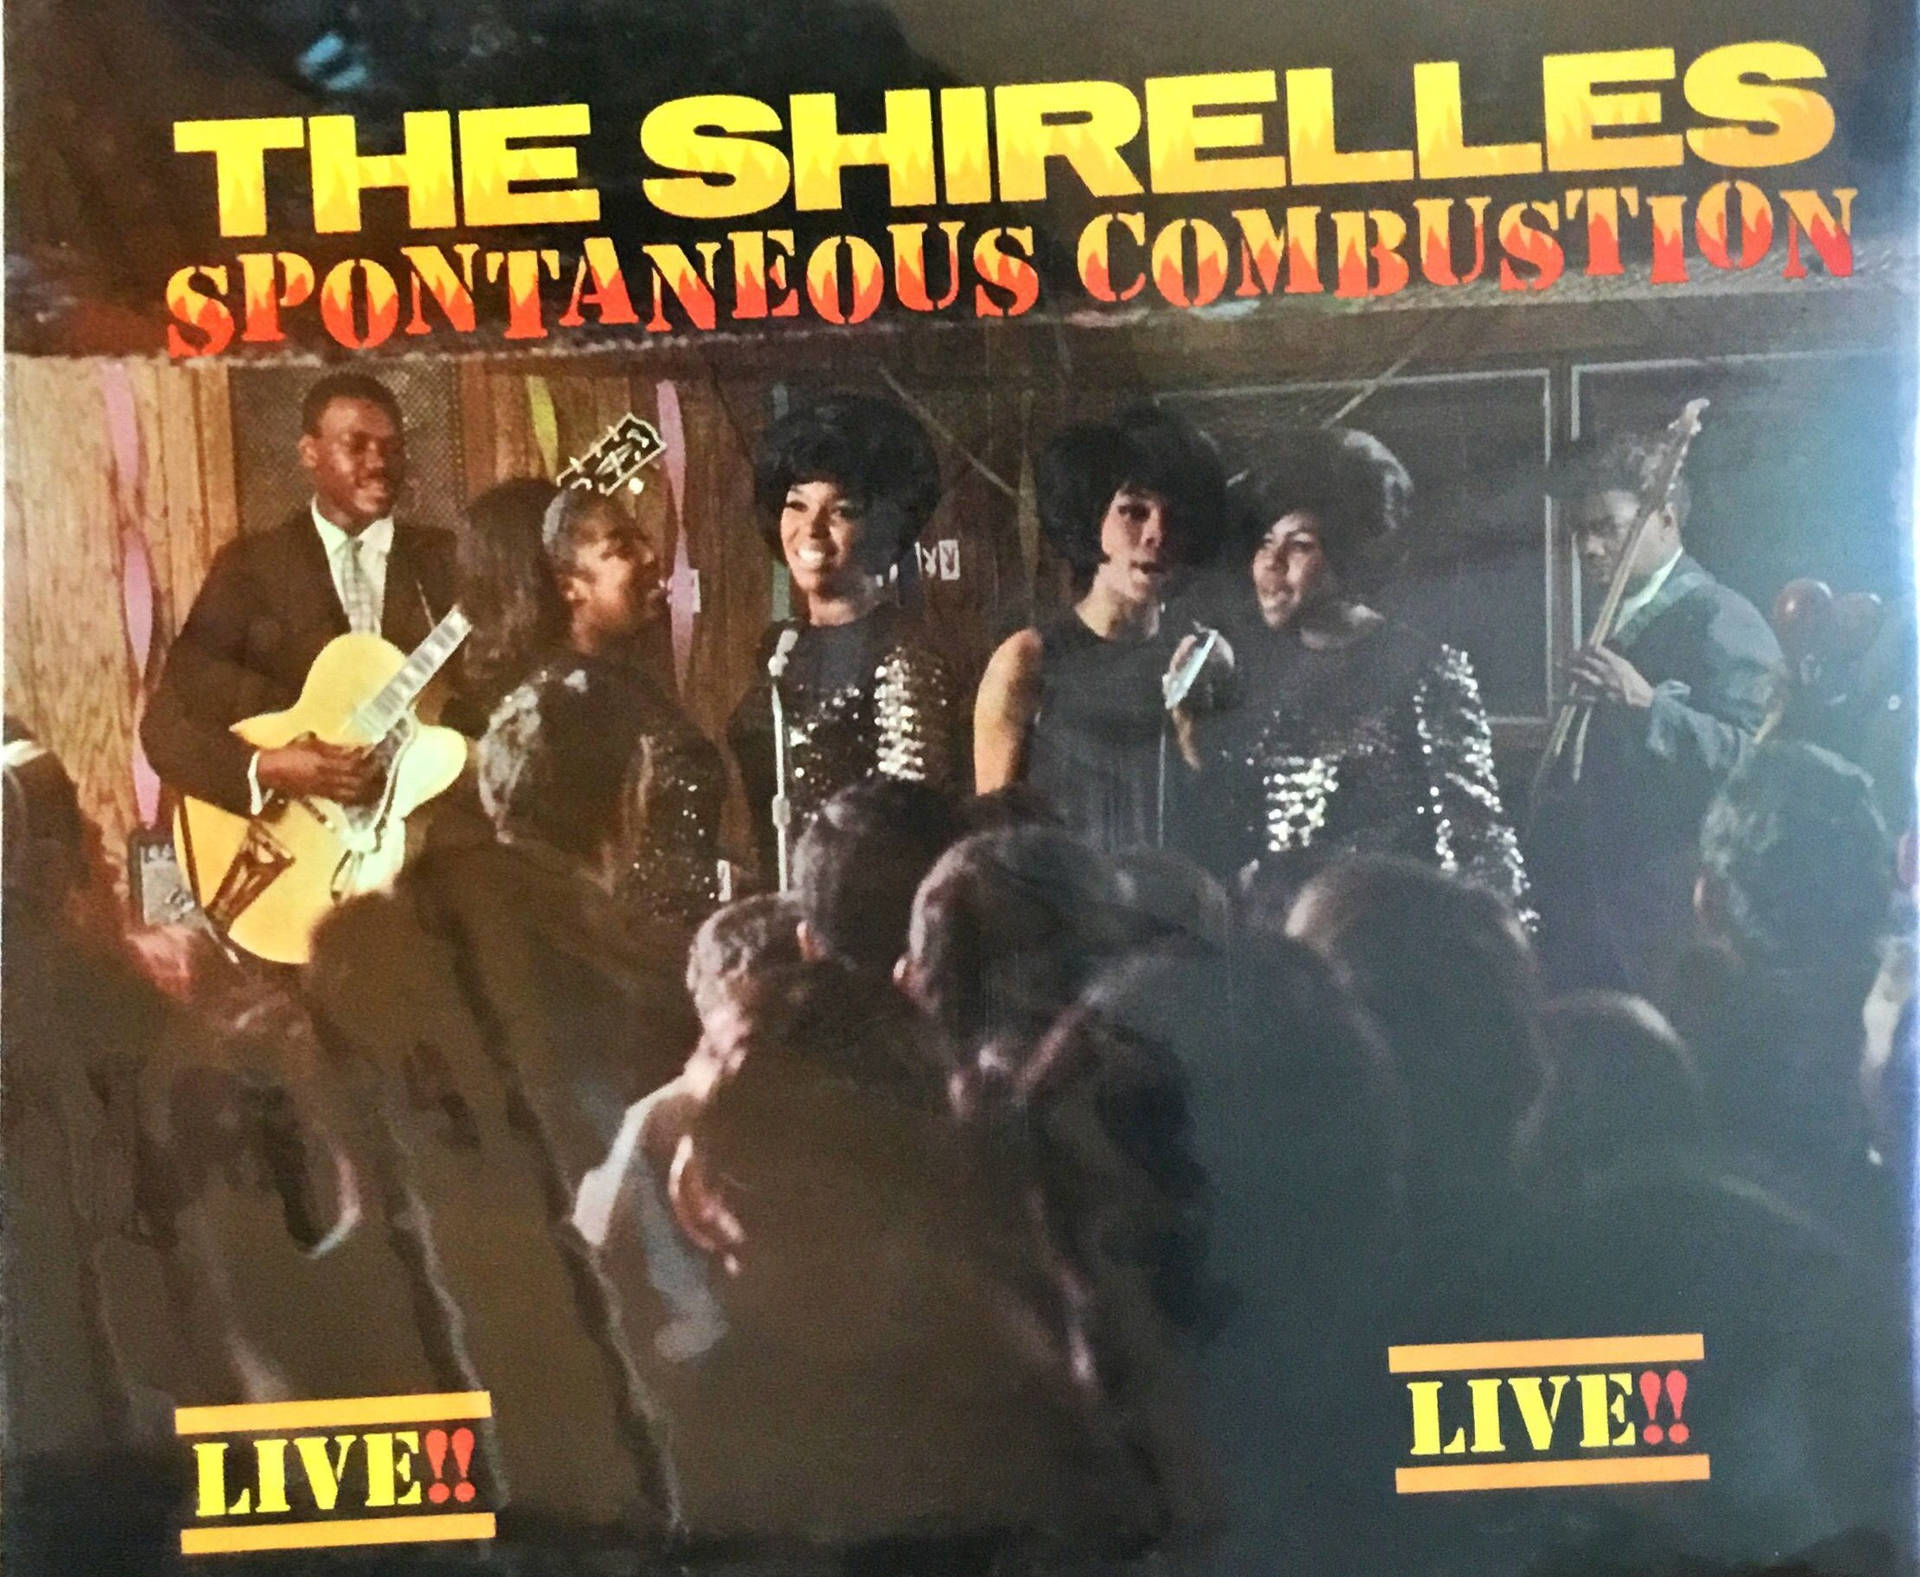 Den Shirelles Spontan Combustion Album Cover Wallpaper